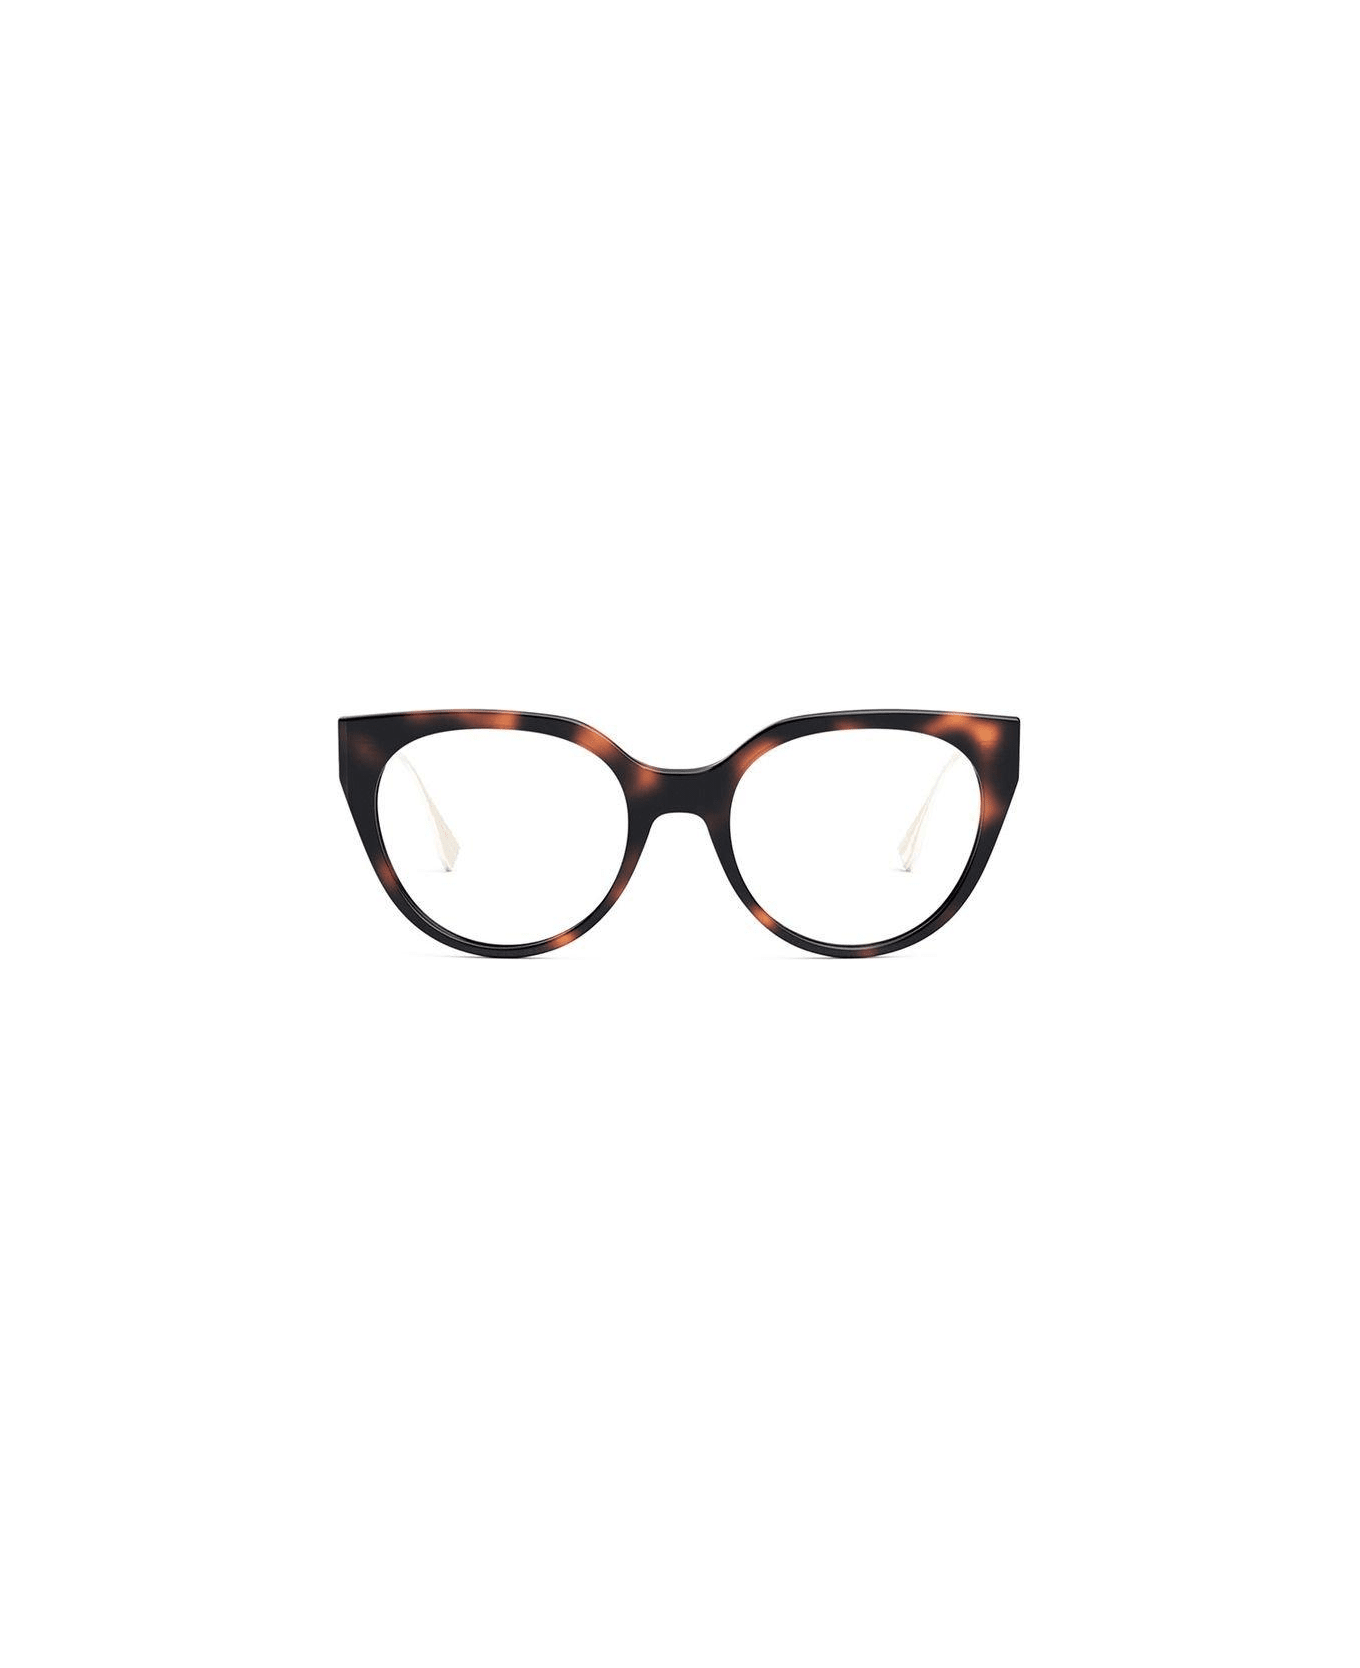 Fendi Eyewear Cat-eye Glasses - 054